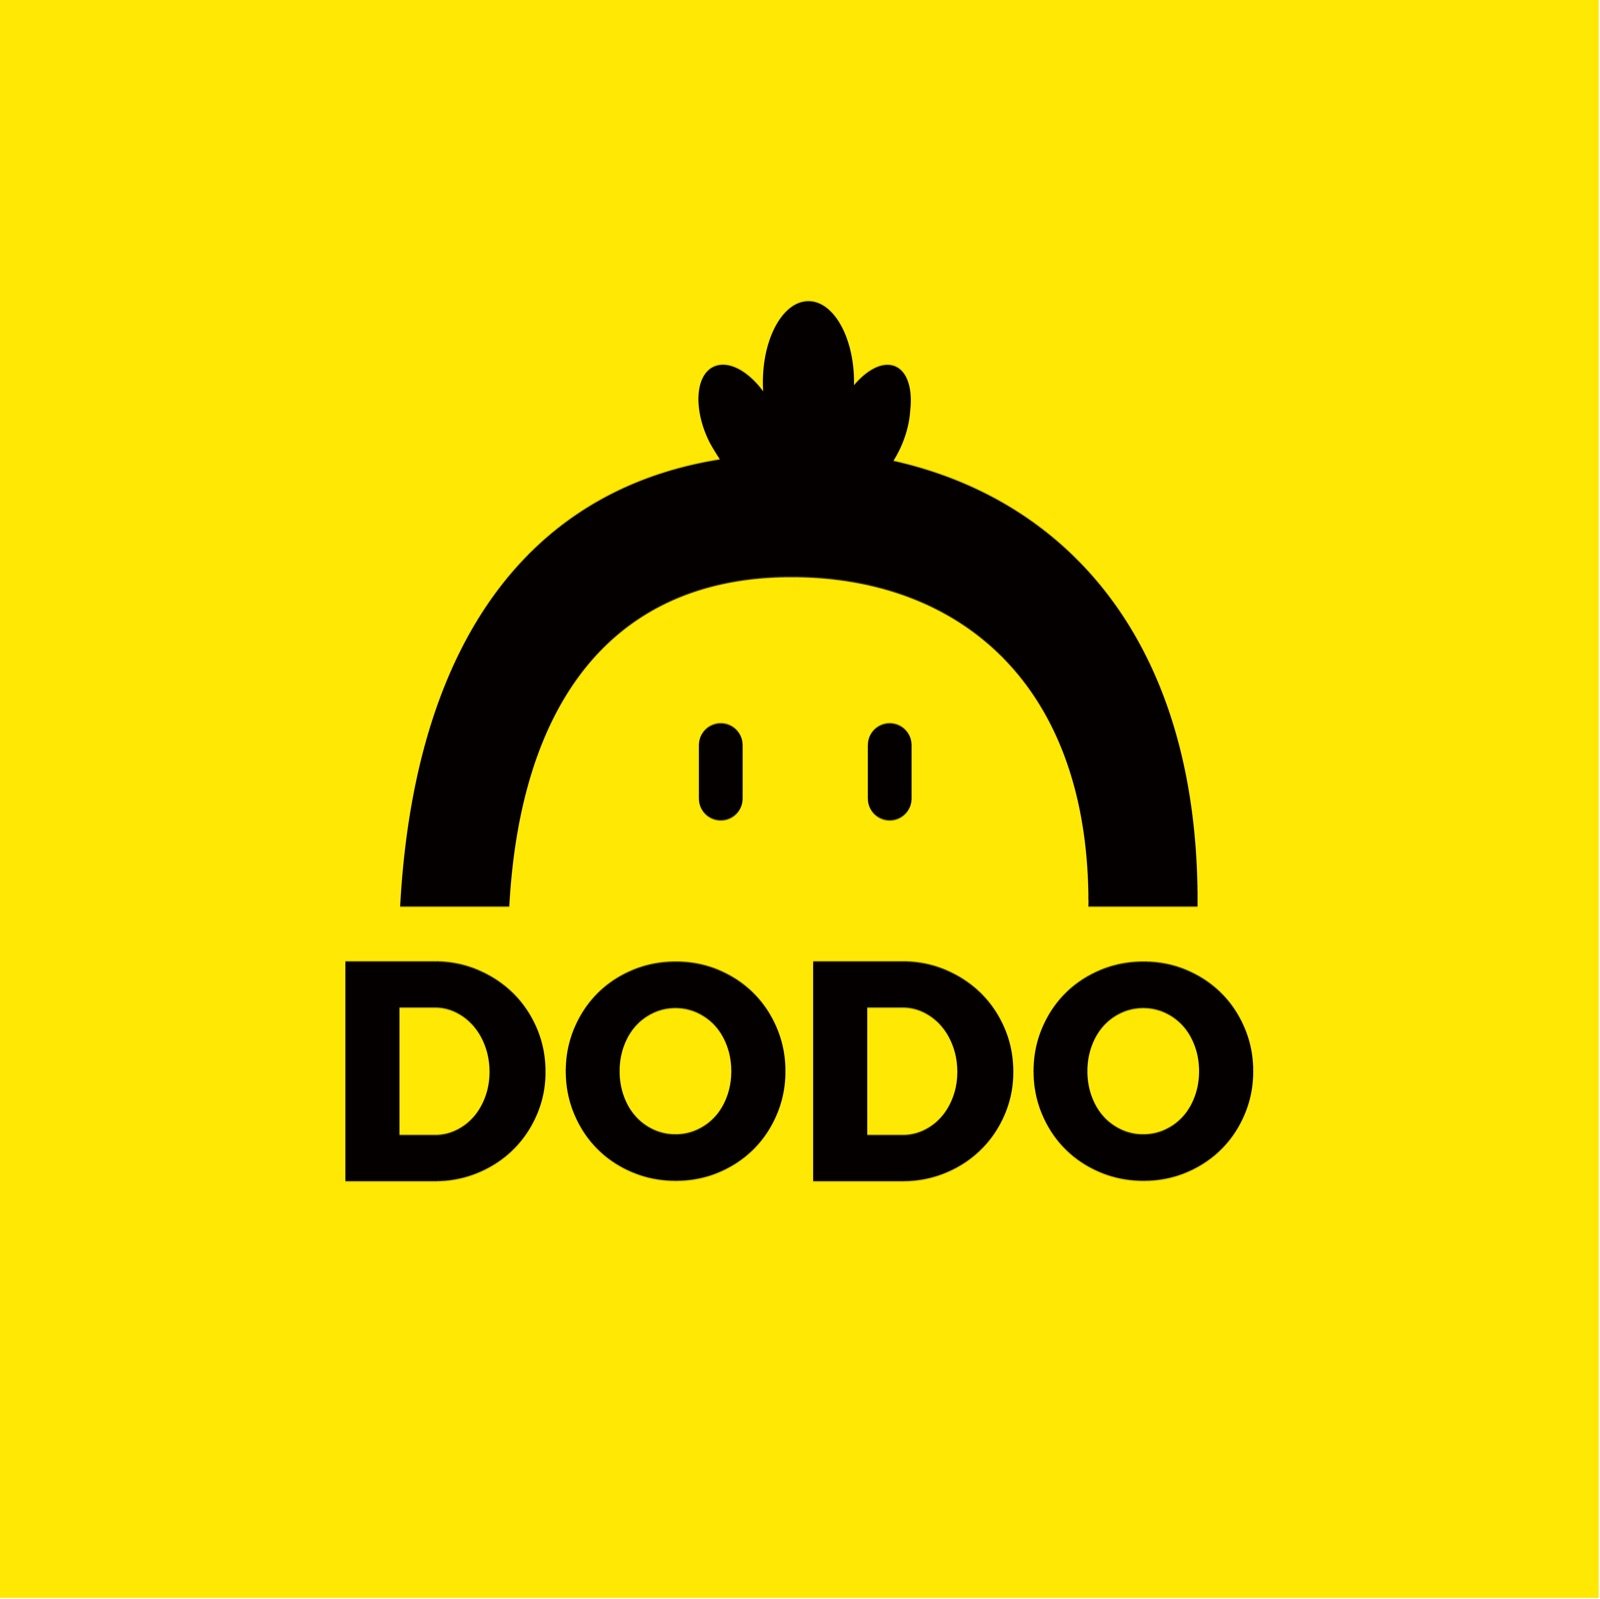 Dodo logo 126kb